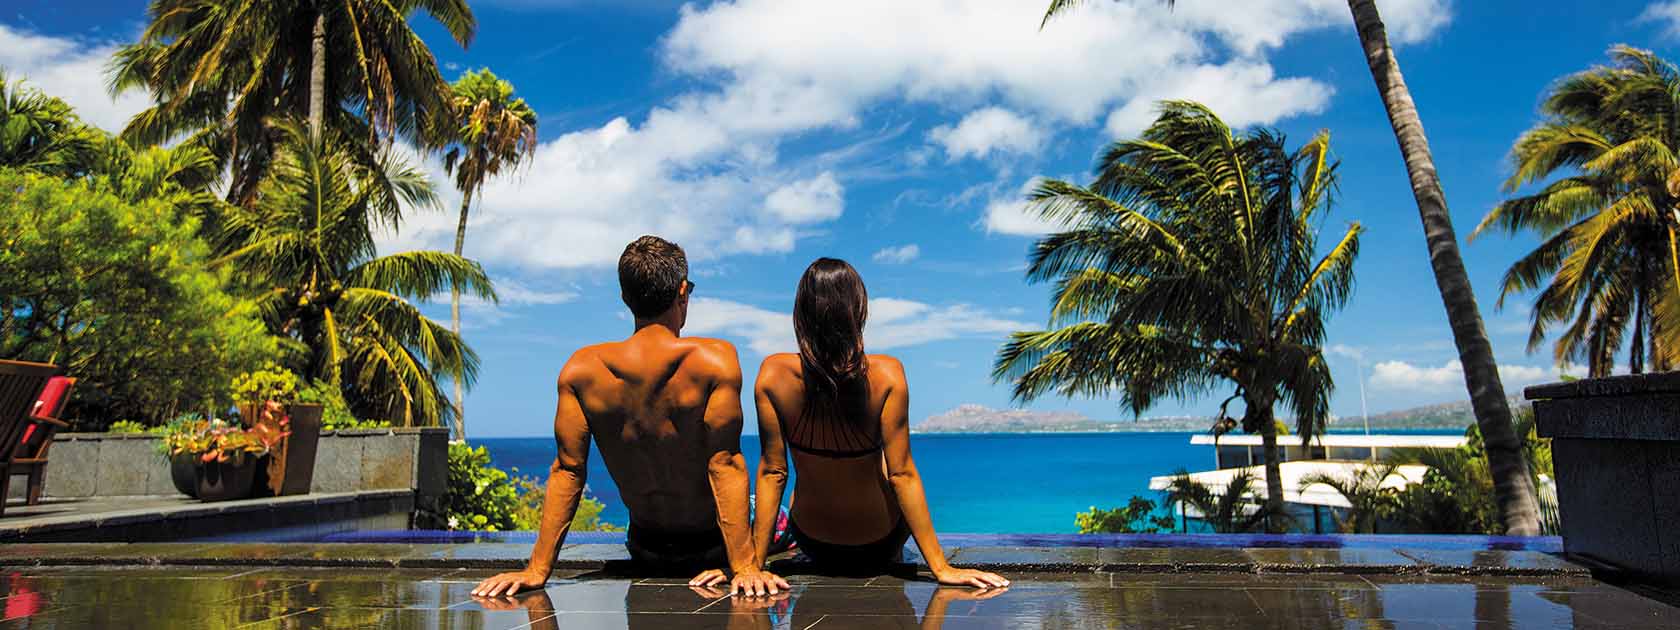 homme et femme assis au bord de la piscine observant l'océan au loin